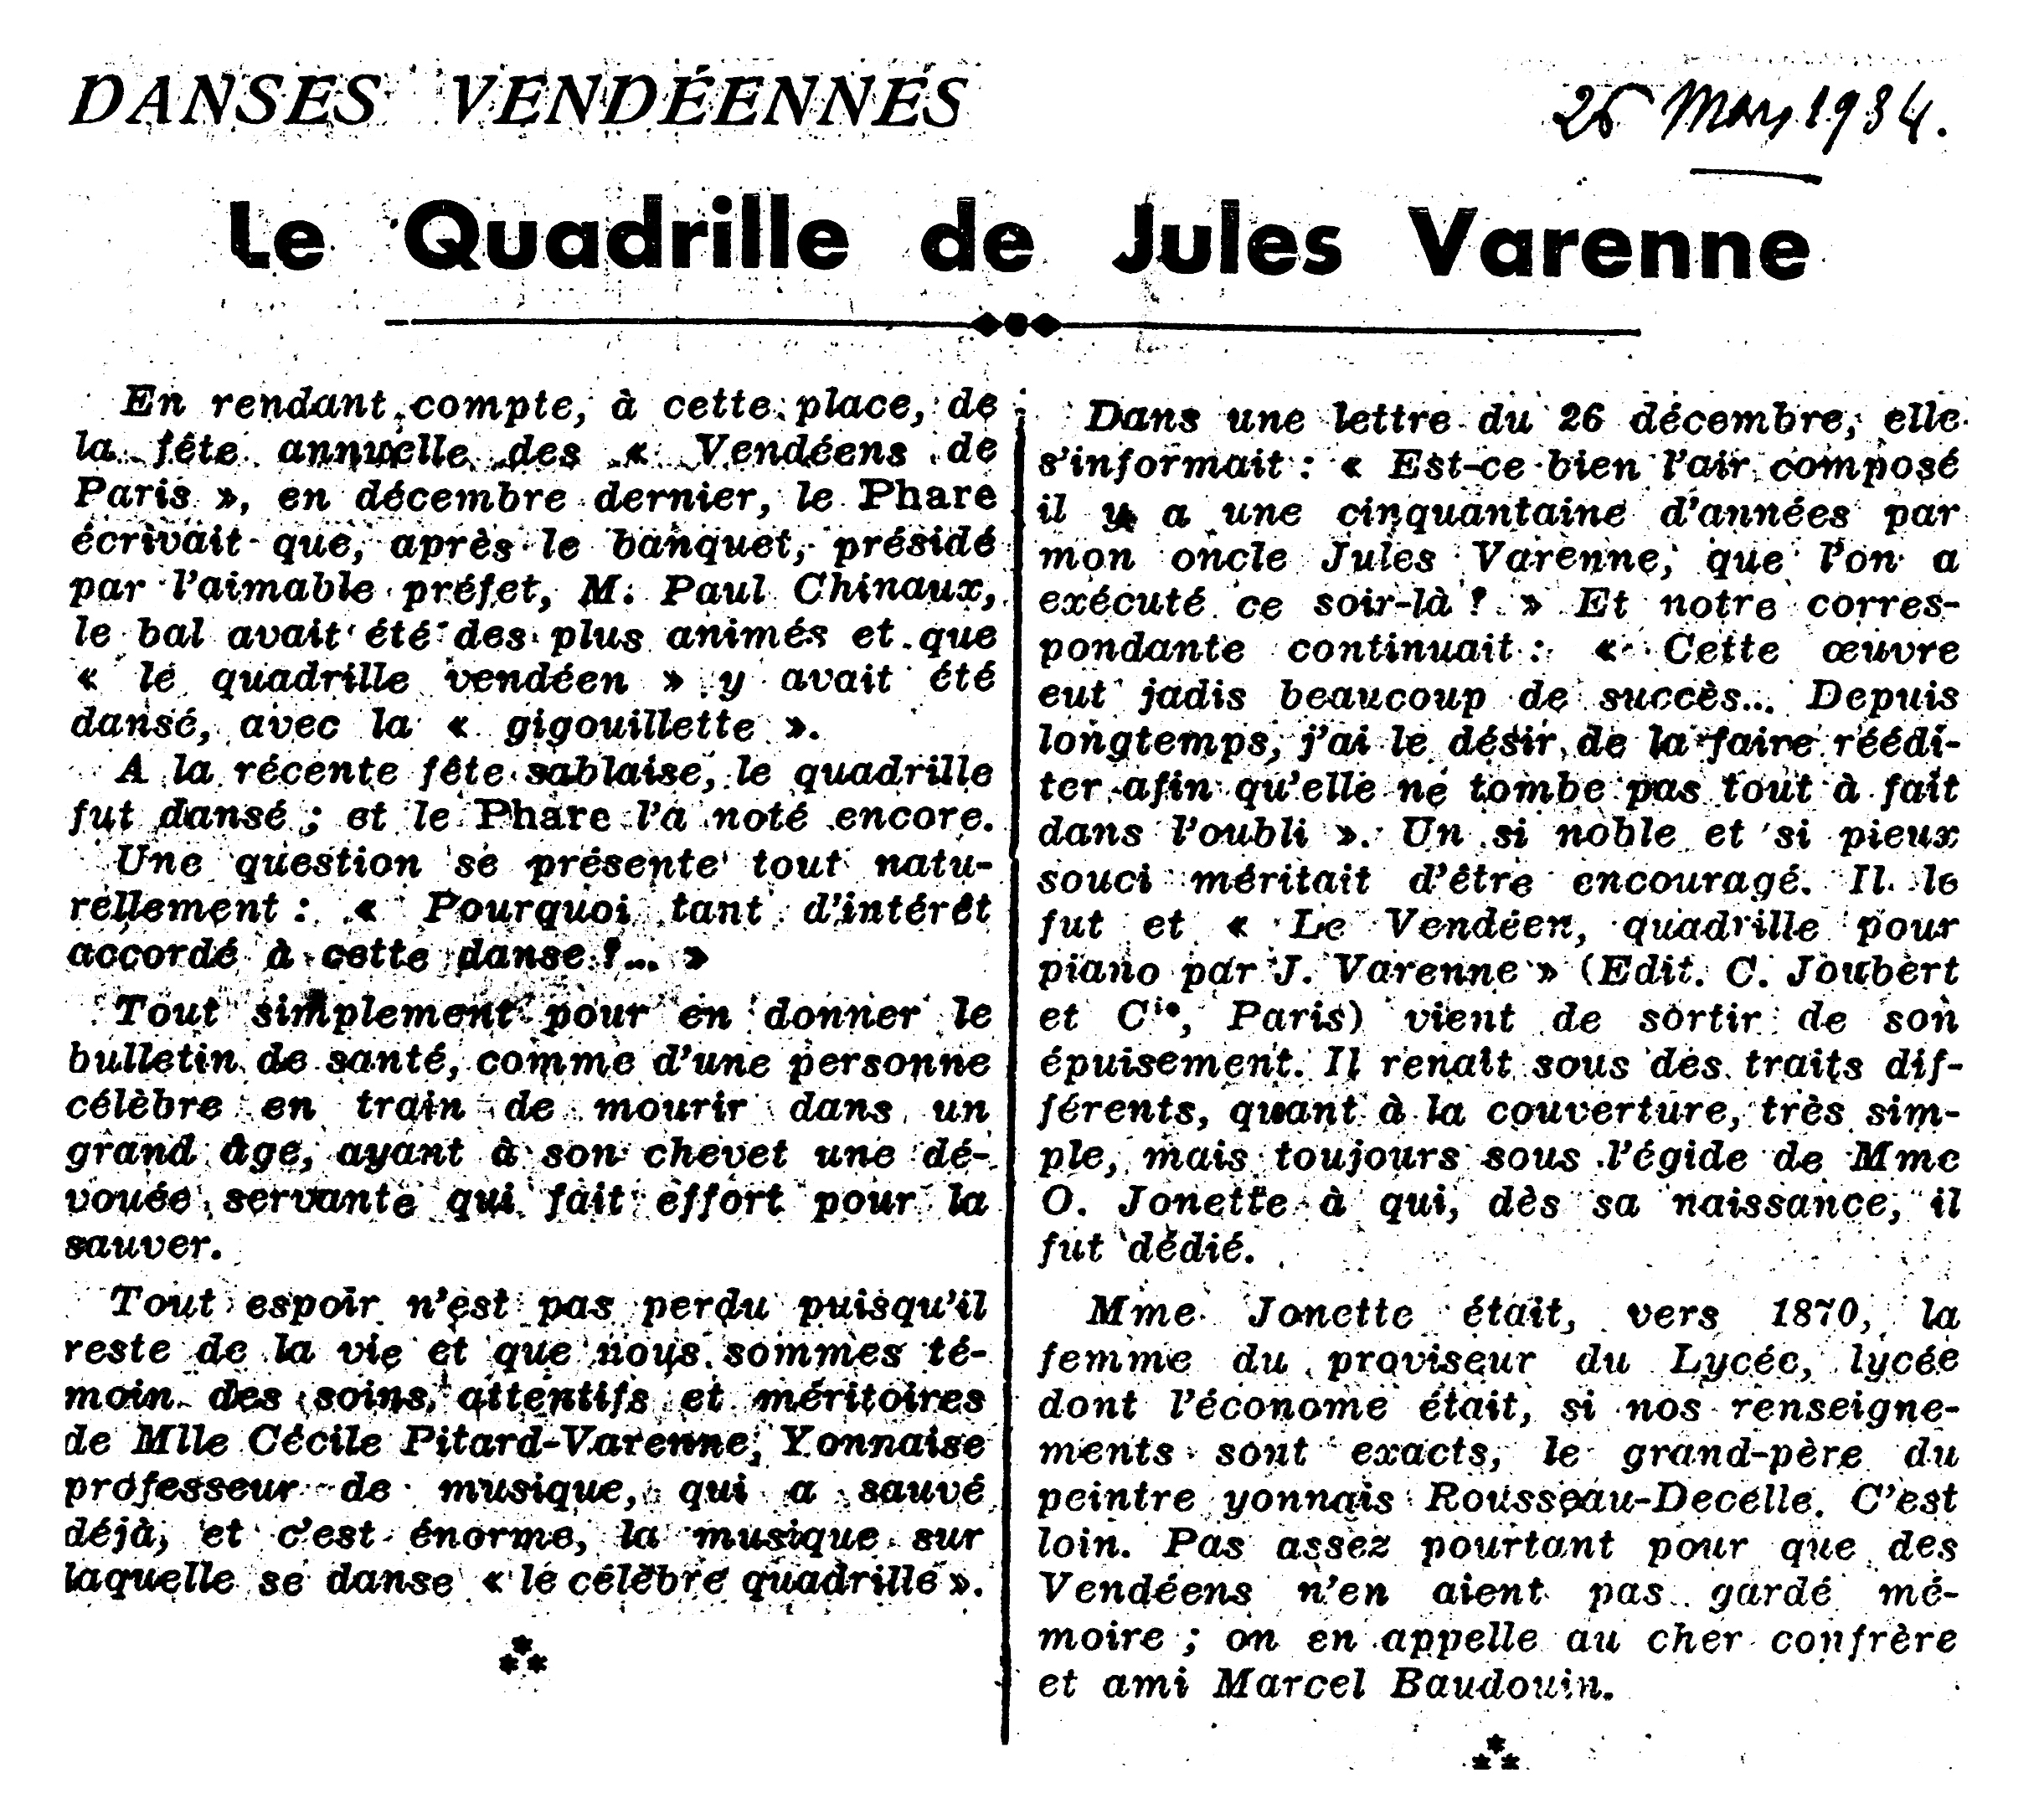 Danses vendéennes - Le quadrille de Jules Varenne, article de 1934 par Paul Devigne